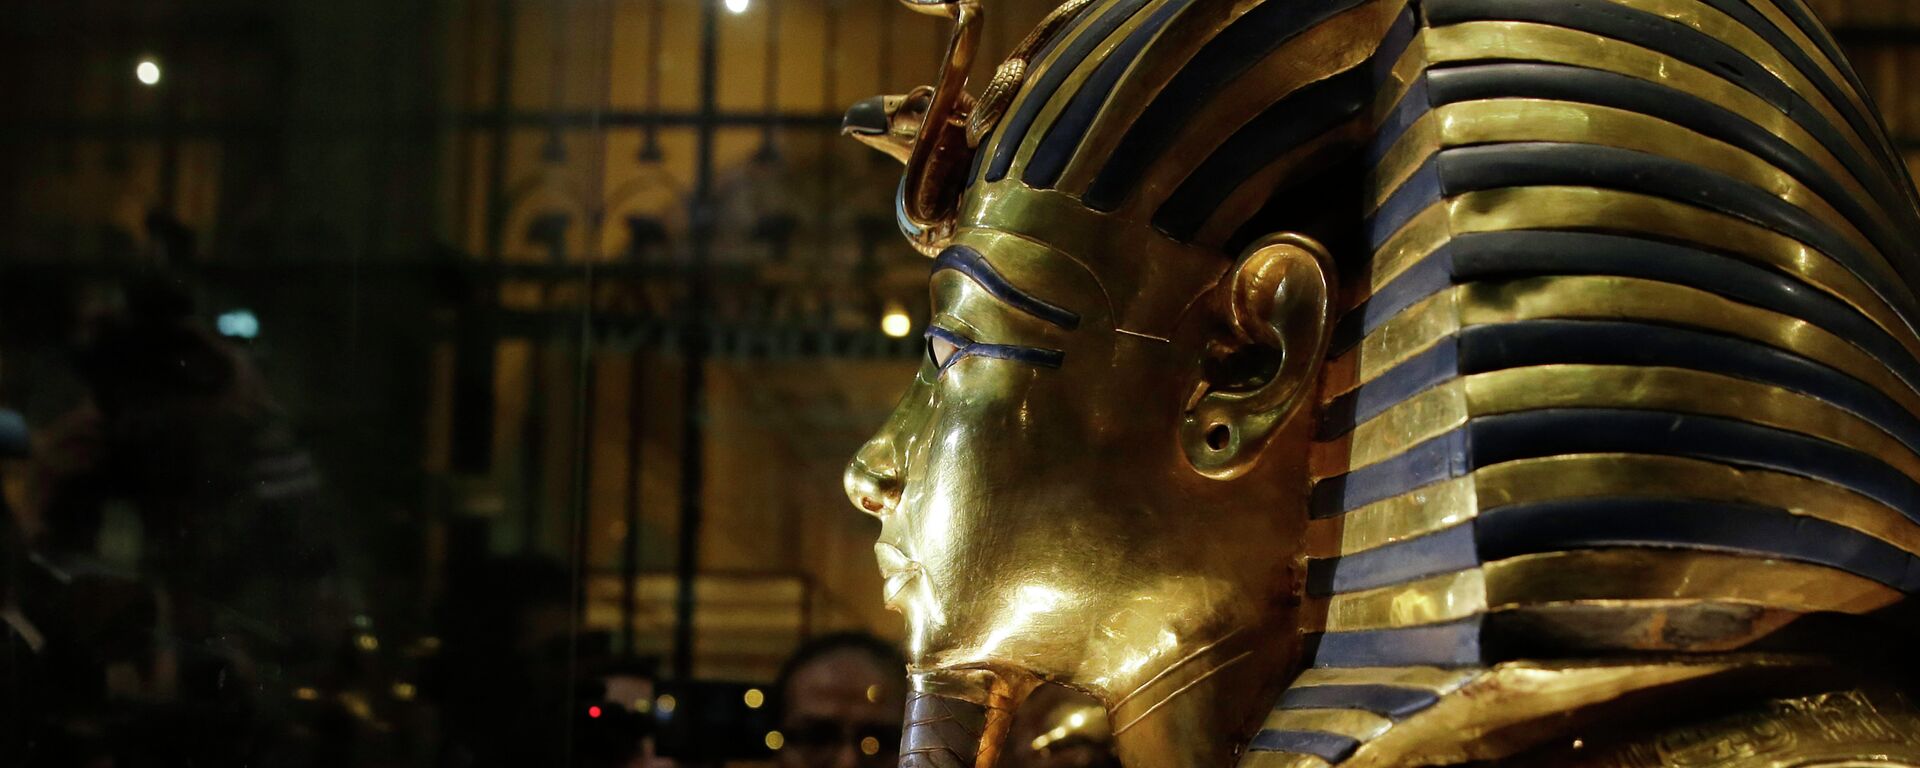 Златна маска краља Тутанкамона у Египатском музеју у Каиру - Sputnik Србија, 1920, 11.09.2021